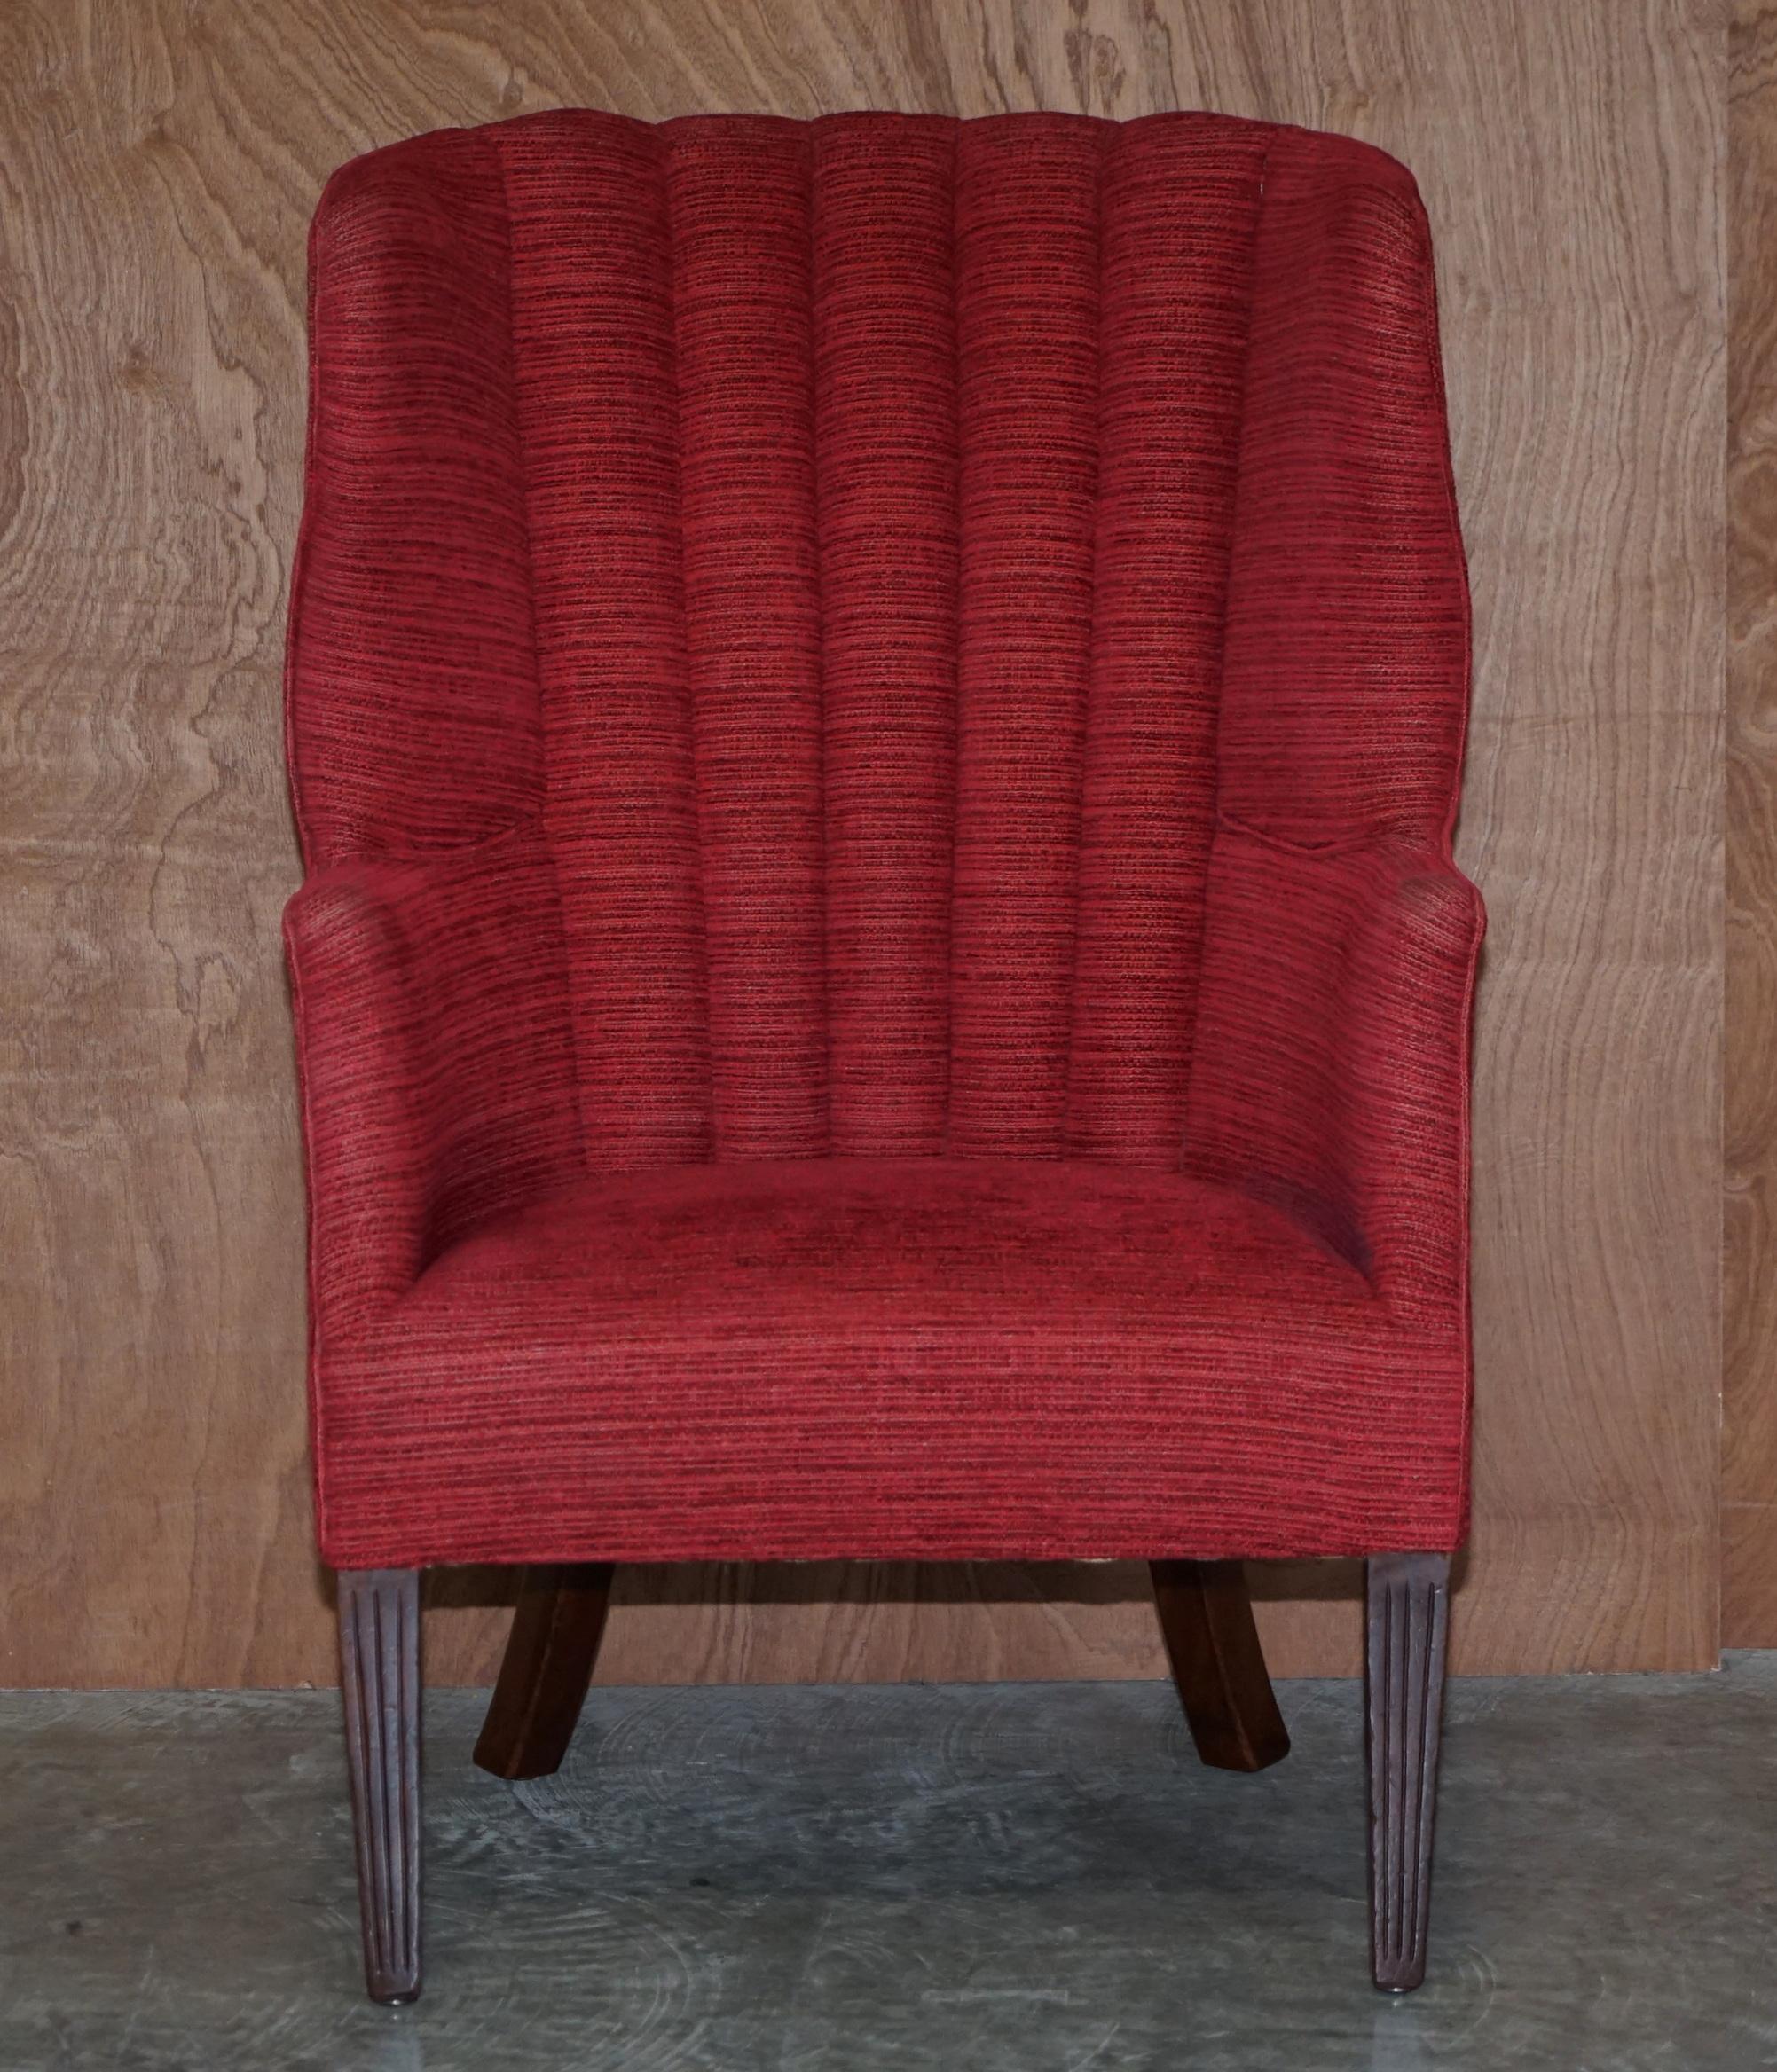 Nous sommes ravis d'offrir à la vente ce superbe fauteuil victorien de type Porters avec dossier cannelé 

Ce fauteuil est un véritable tour de force, il a absolument tout pour lui, il a le dossier cannelé original qui est plus confortable à vivre